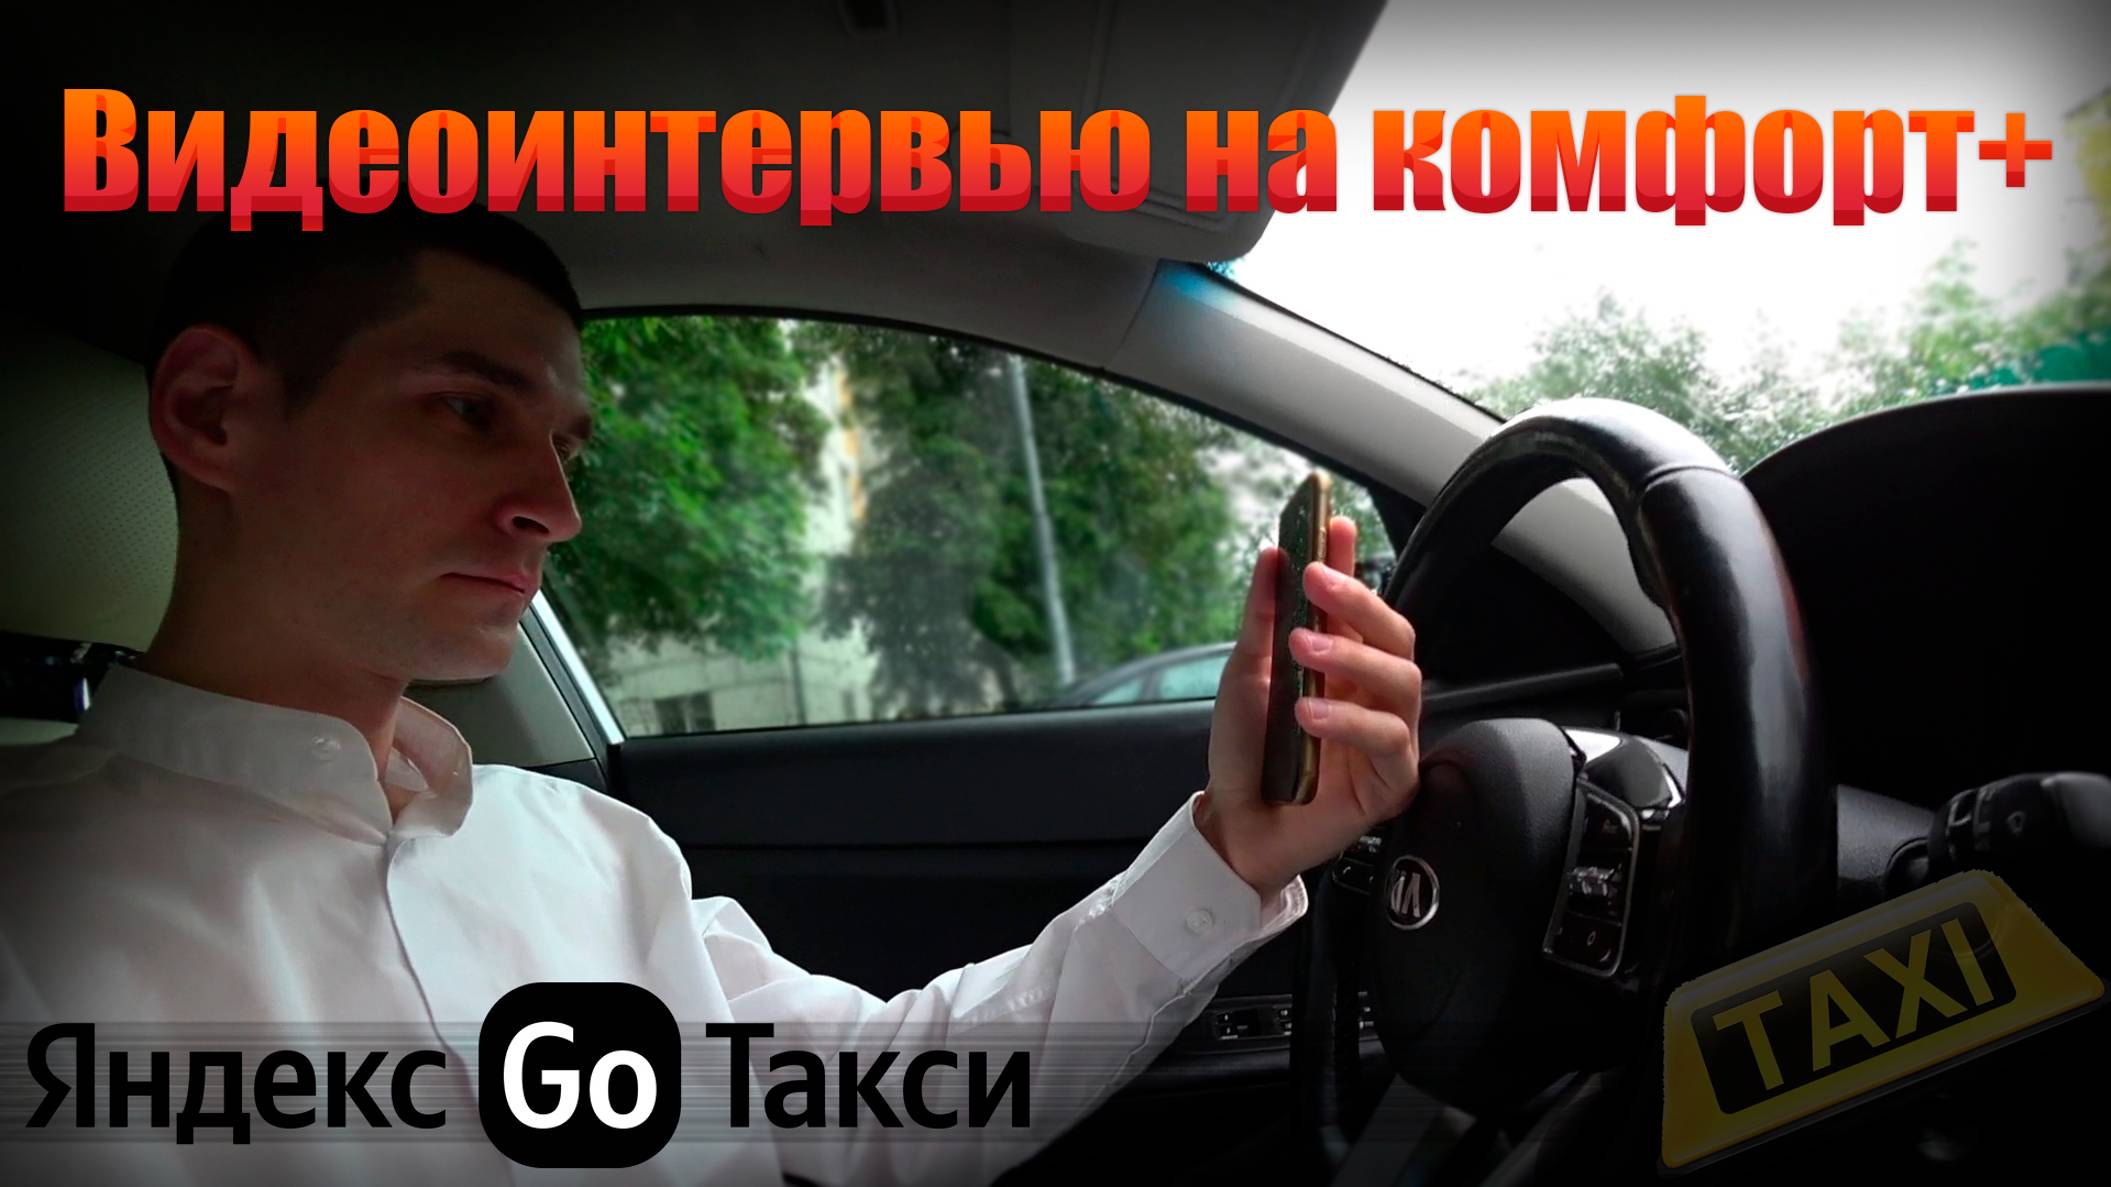 Прошел видеоинтервью в Яндекс GO - Комфорт плюс 🚖